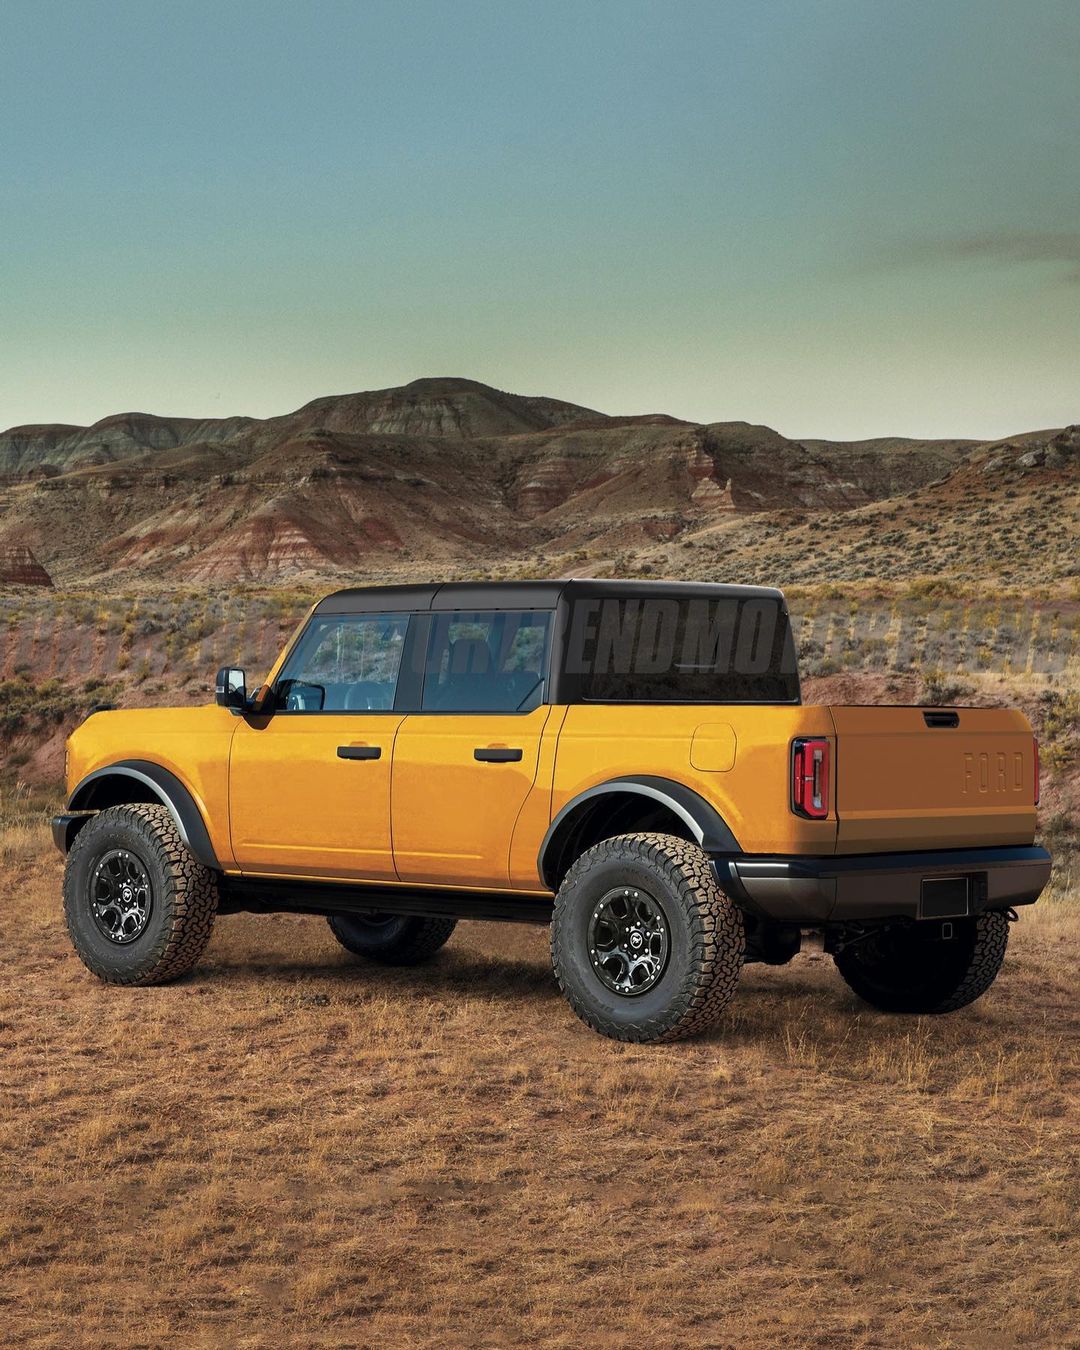 Ford đam mê làm bán tải: Ranger, Raptor, Maverick, F-series chưa đủ mà có thể còn là mẫu xe này nữa - Ảnh 4.